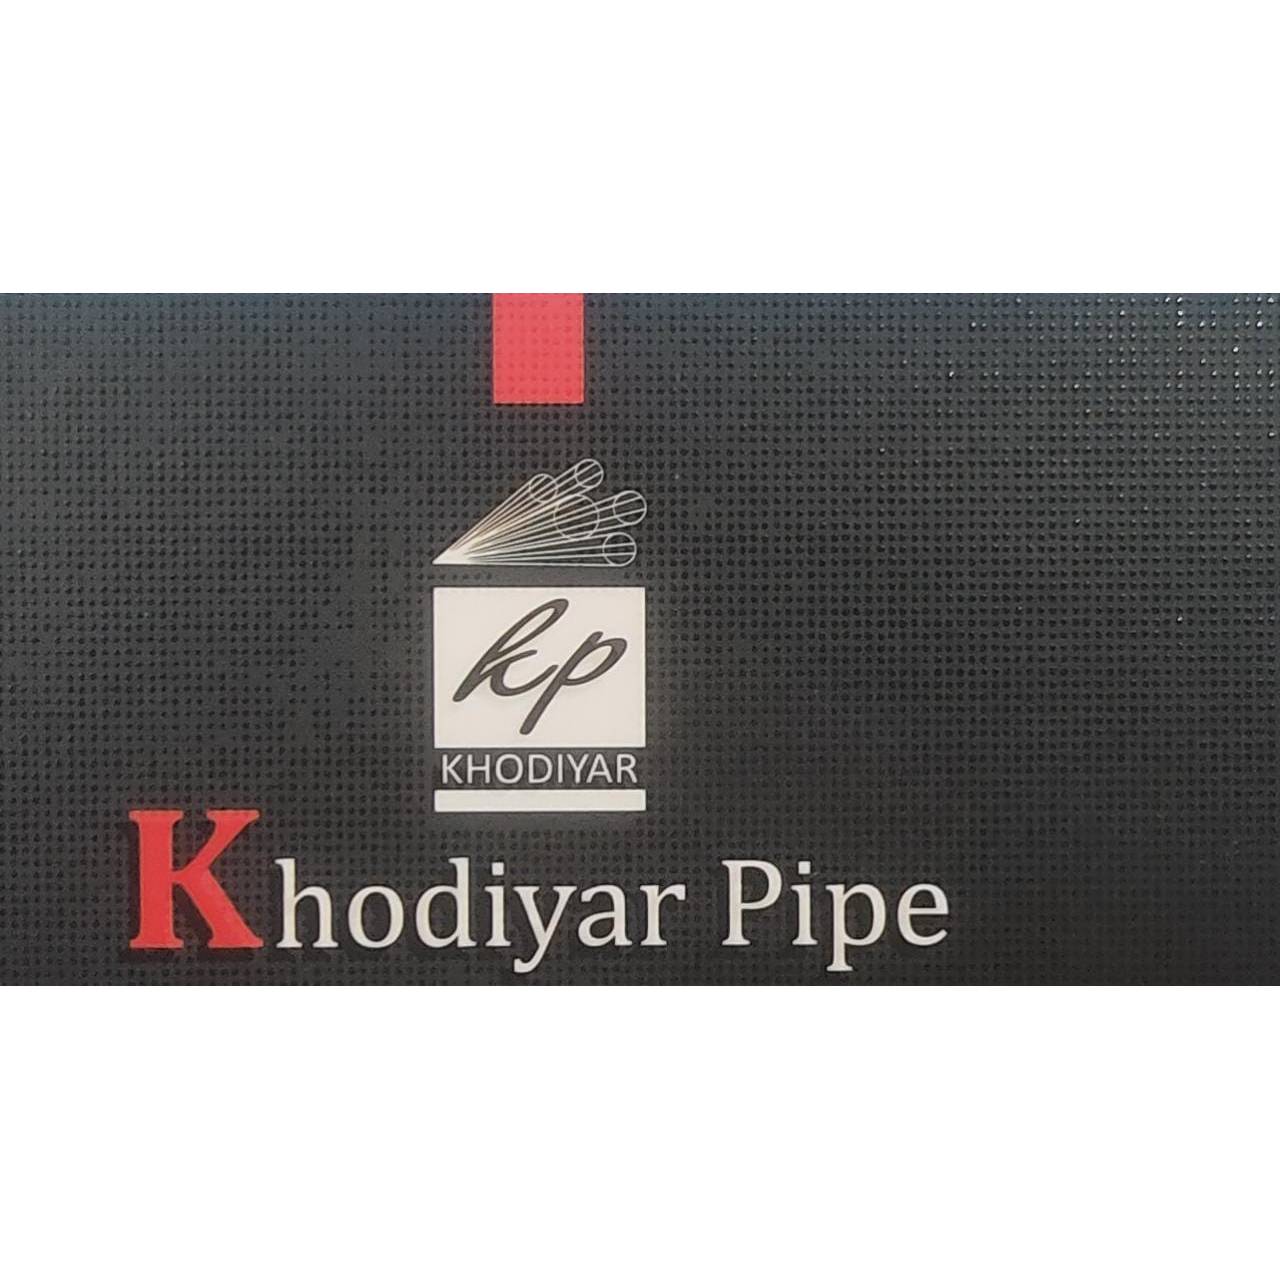 Khodiyar Pipe